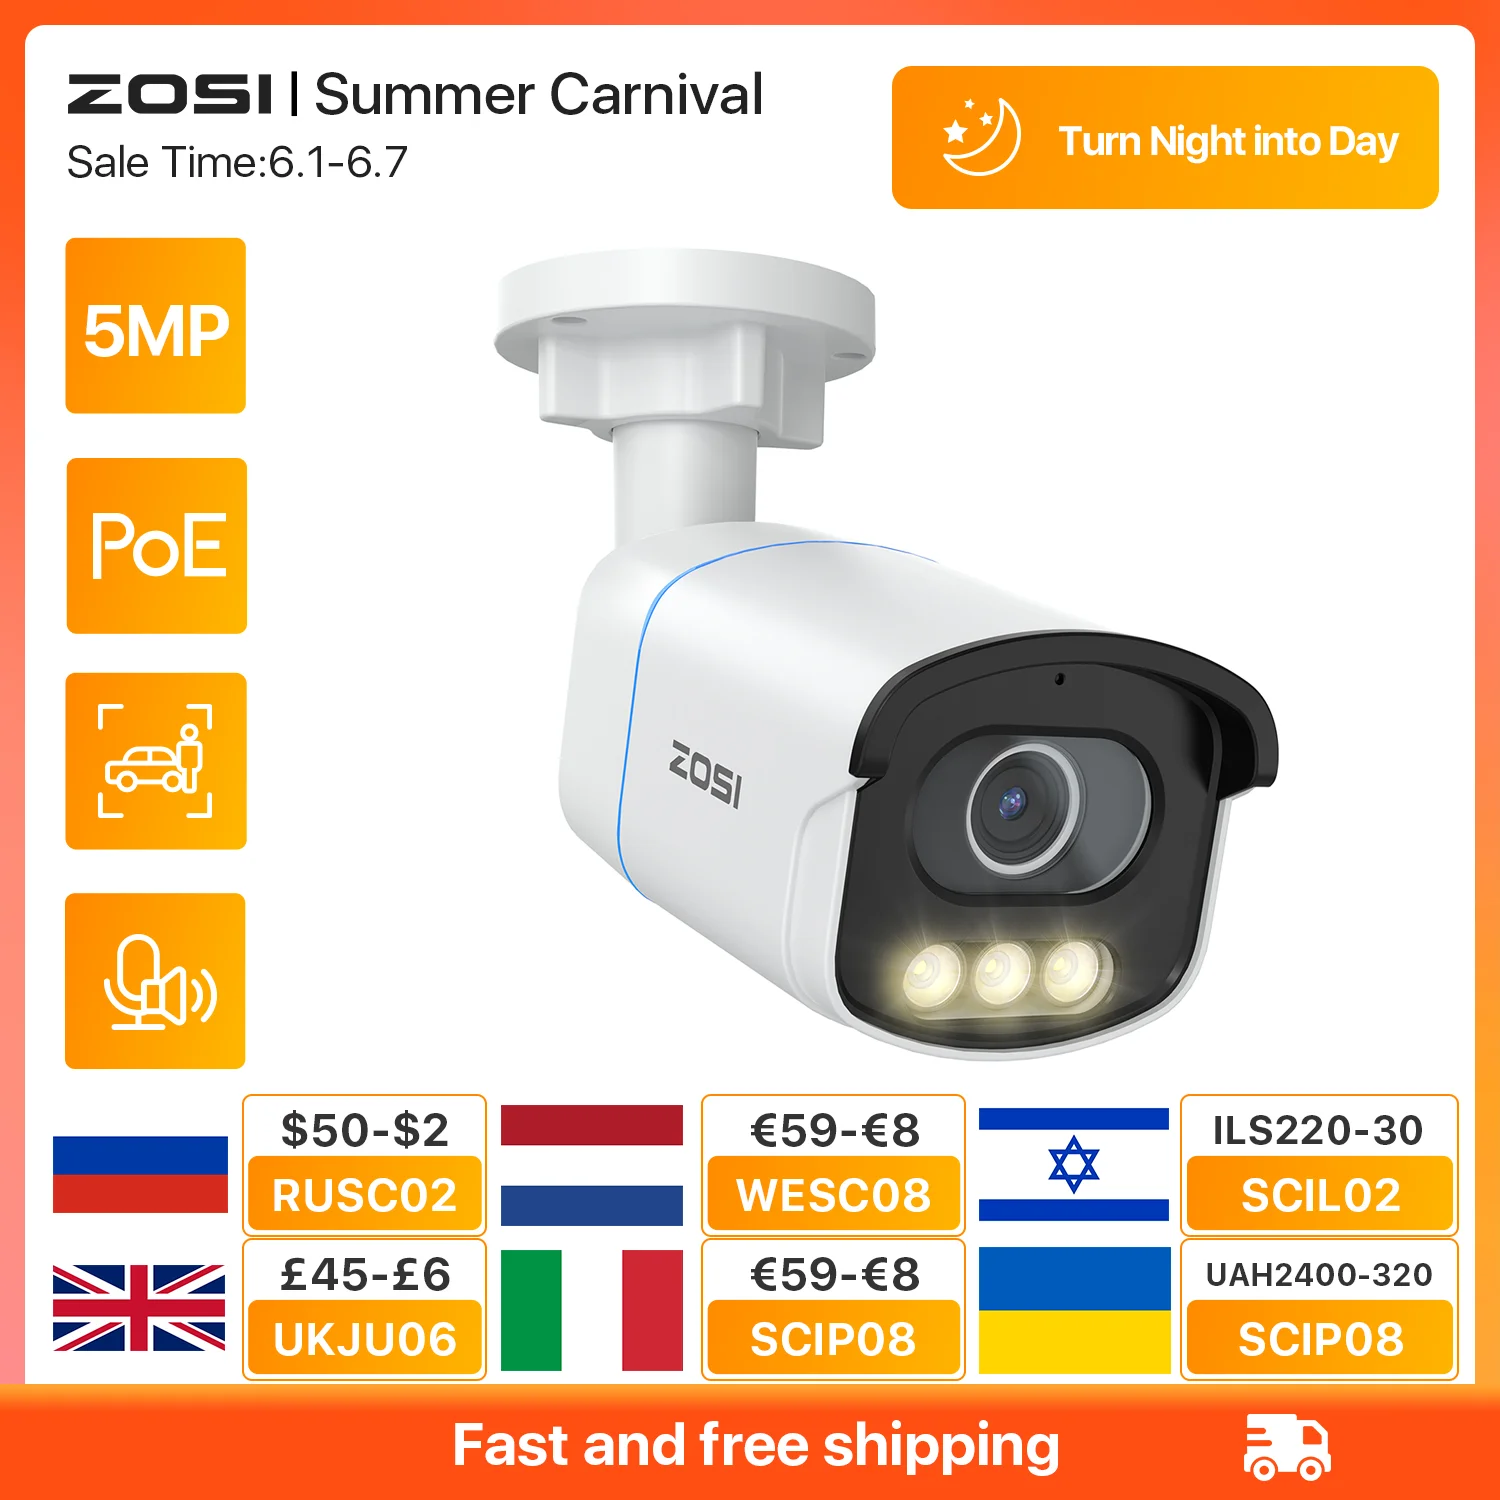 ZOSI C186 3K AuroraLux telecamera PoE di sorveglianza 5MP HD telecamera IP di sicurezza per visione notturna a colori reali con rilevamento del veicolo della persona